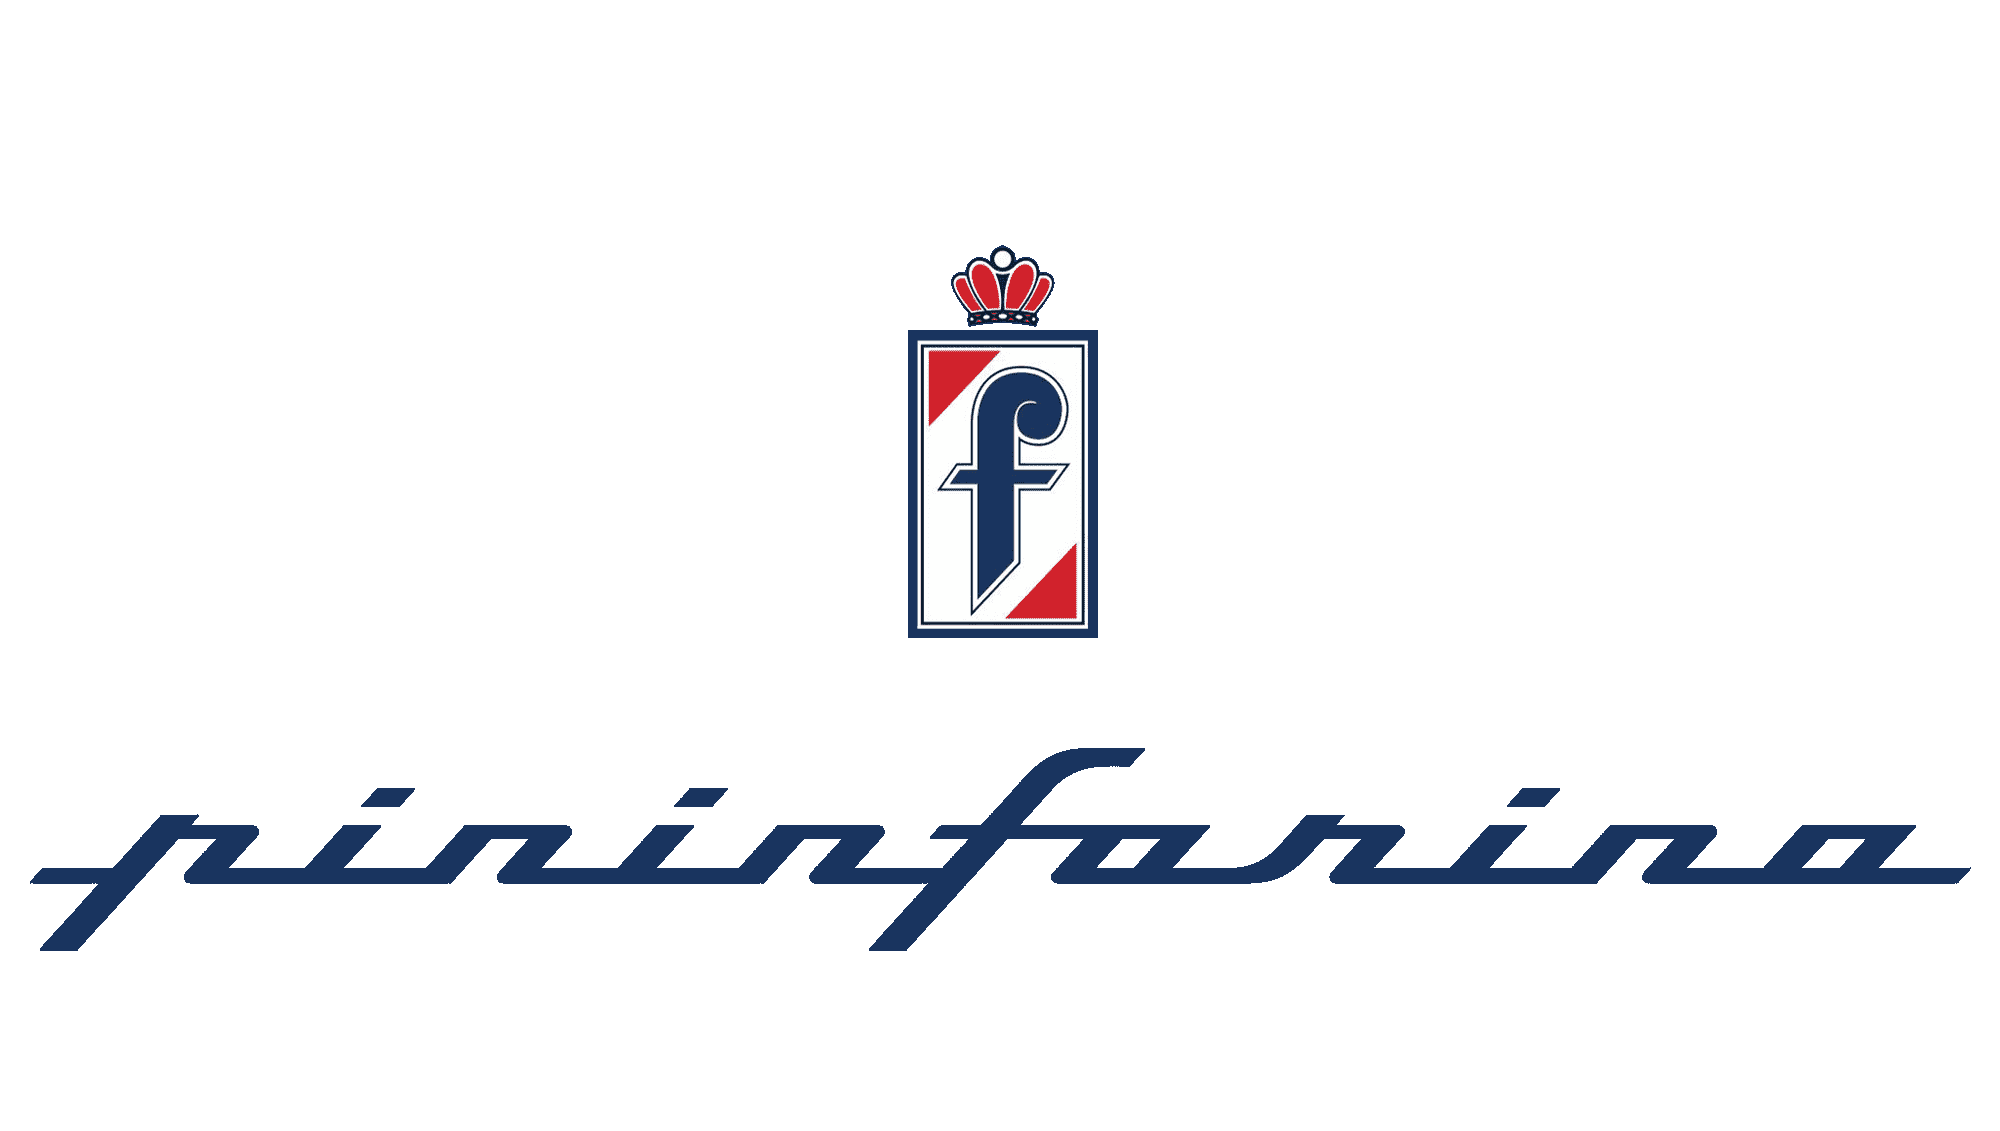 Création automobile : Pininfarina, était-il en panne d’inspiration ? (1930-)